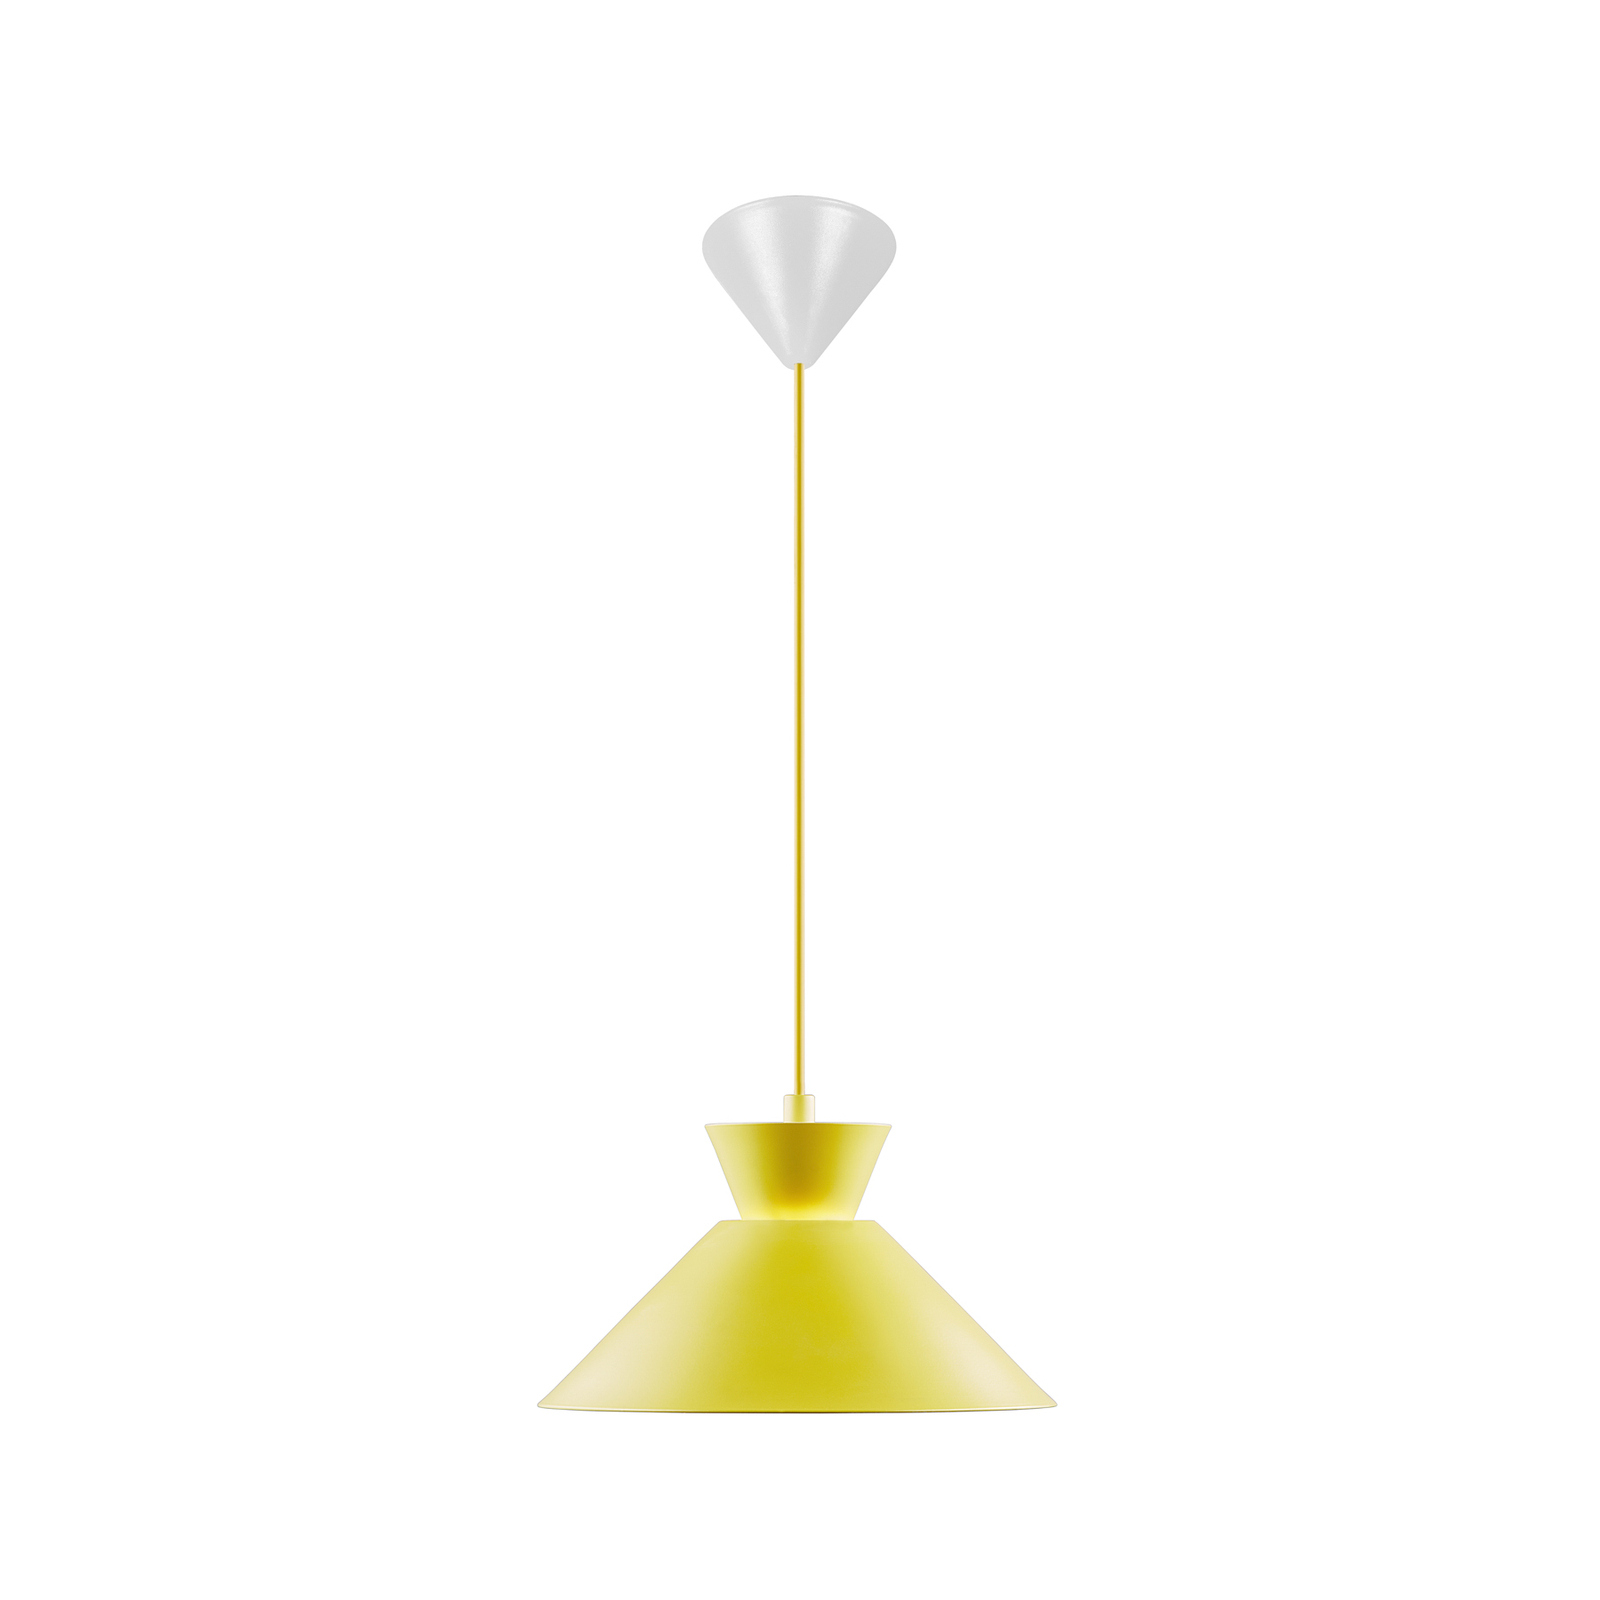 Dial hanglamp met metalen kap, geel, Ø 25 cm